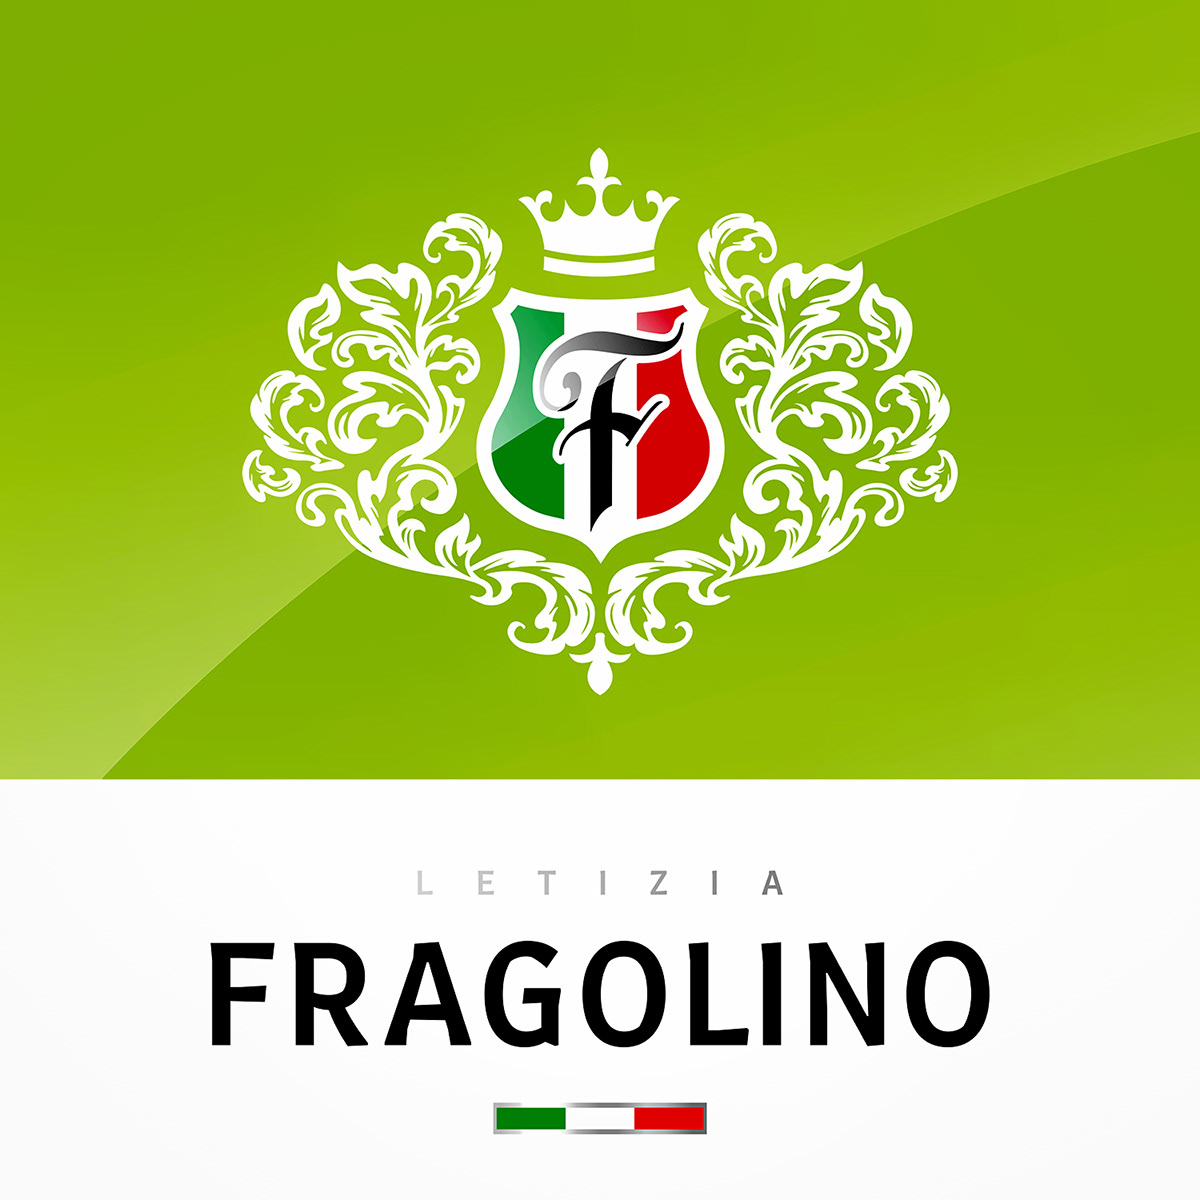 Sumilov shumilov shumilovedesign shumi love design branding  Packaging fragolino Italy